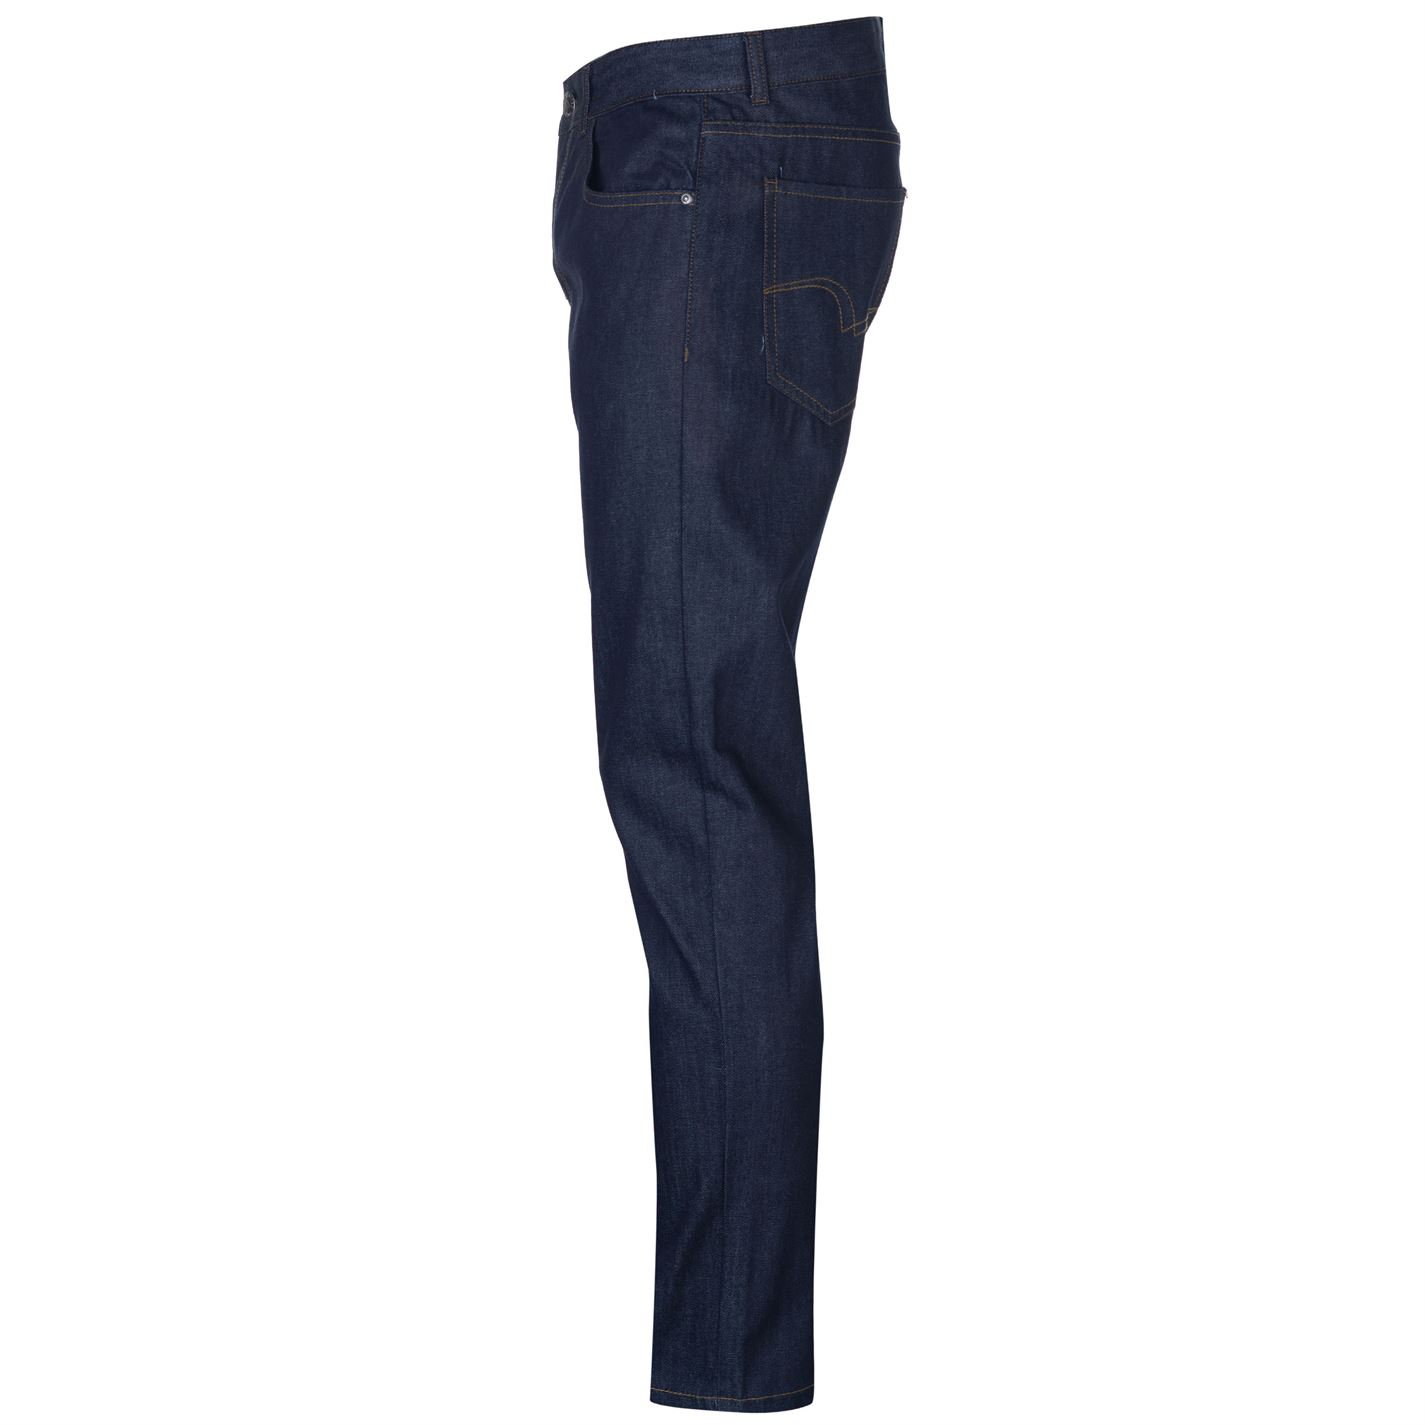 Lee Cooper Slim Leg Jeans Mens Gents Pants Trousers Bottoms Cotton Zip ...